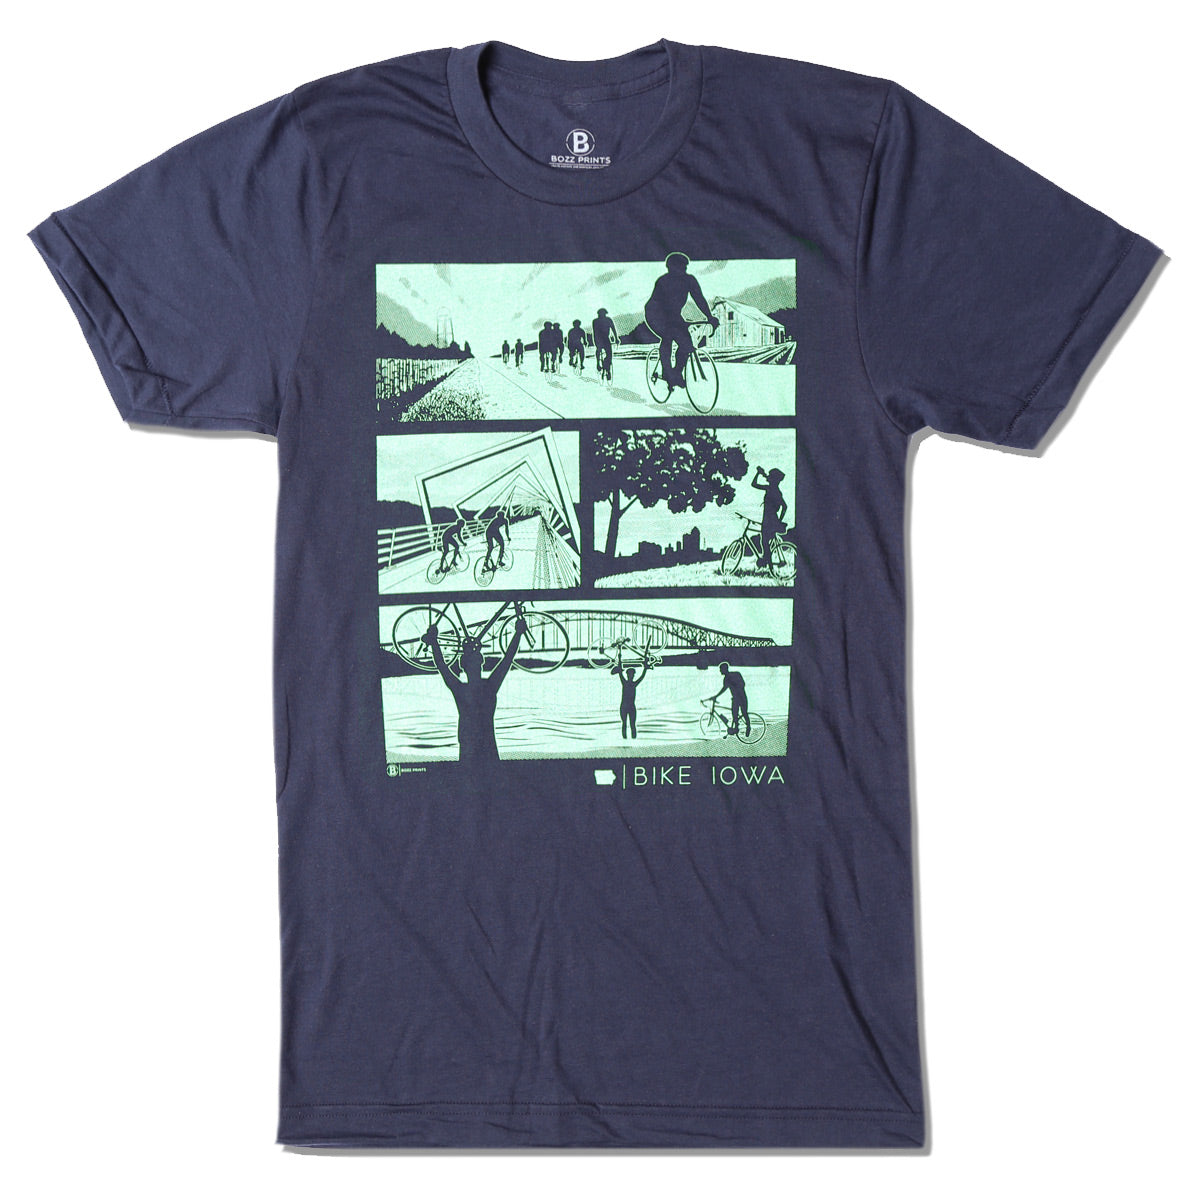 Bike Iowa Navy T-Shirt - Bozz Prints